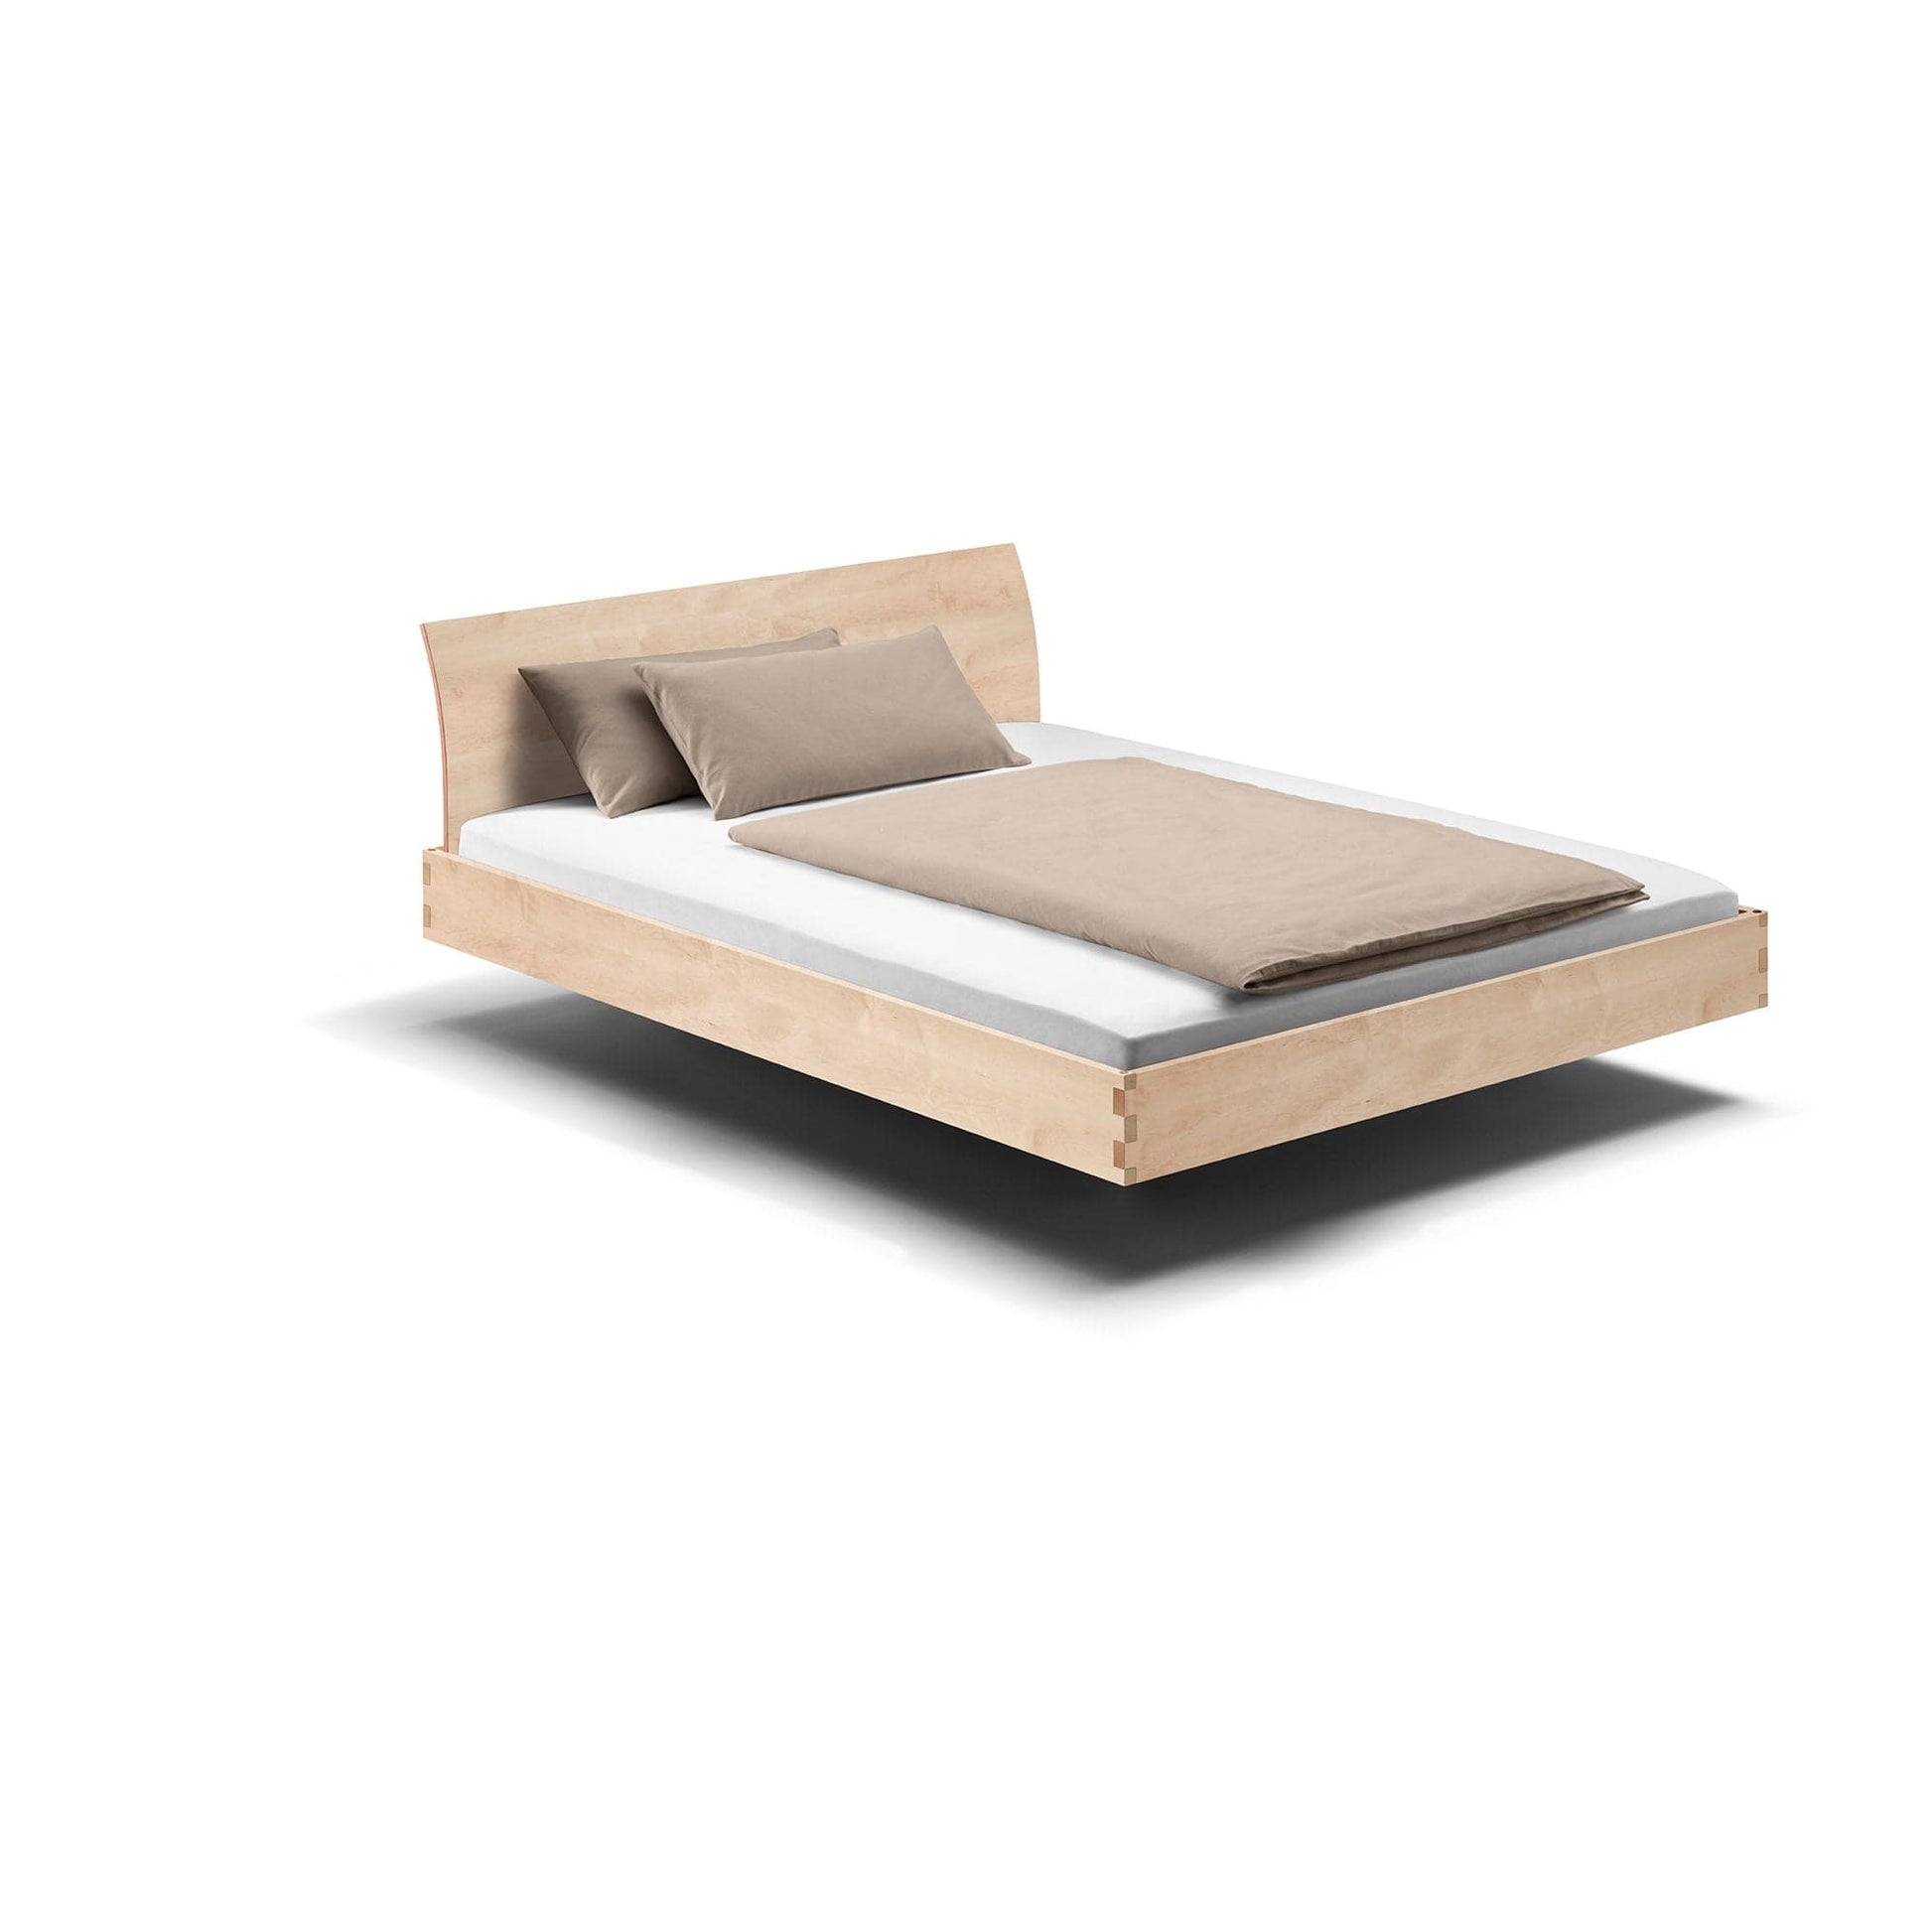 Holzmanufaktur Massivholzbett, ein hochwertiges schwebend leichtes Bett in Ahorn mit verschiedenen Rückenlehnen.